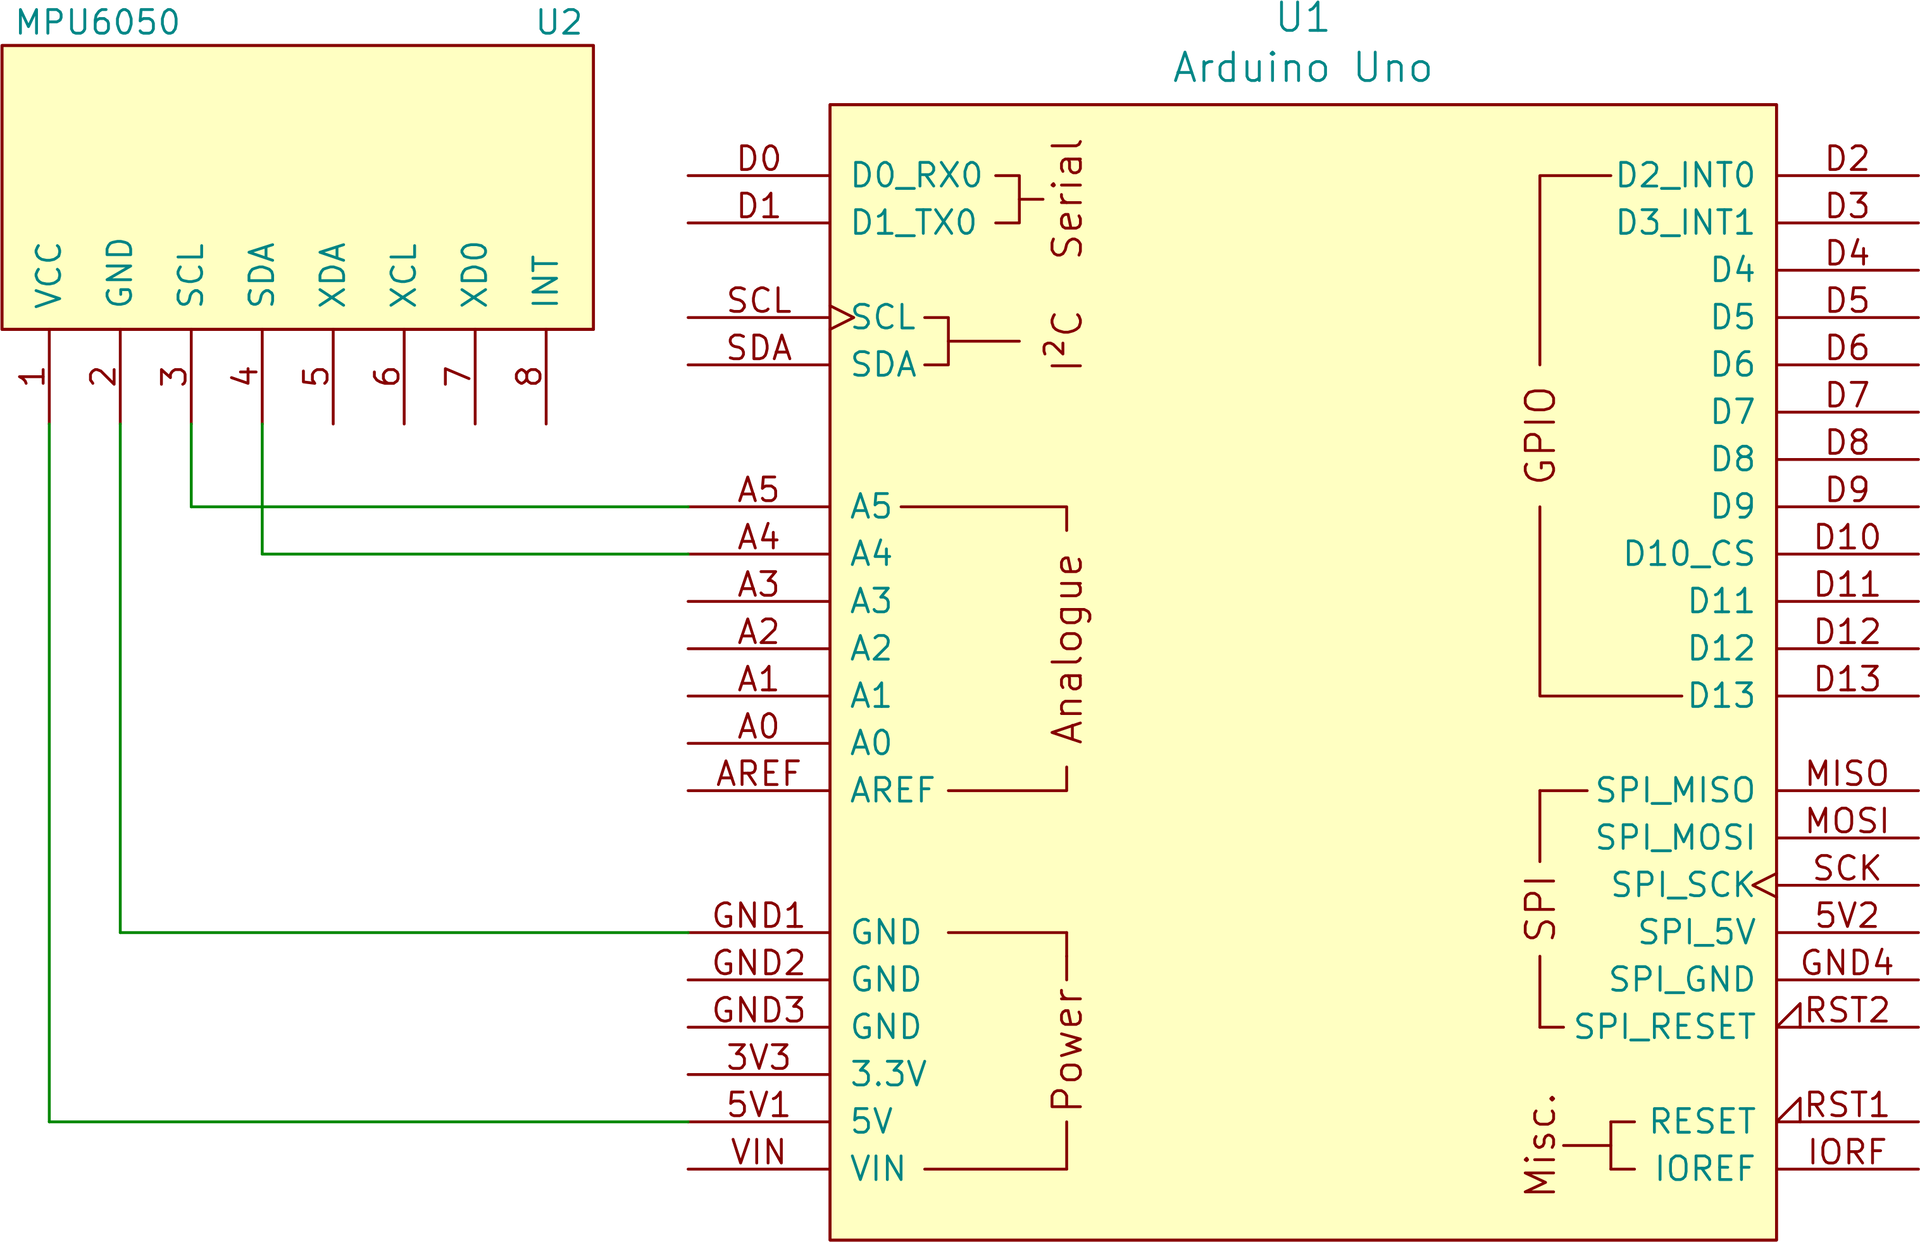 Ilustracja przedstawia schemat elektryczny połączeń arduino uno i modułu akcelerometru. Piny podłączone od modułu do arduino to VCC do 5V, GND do GND, SCL do A5 oraz SDA do A4.